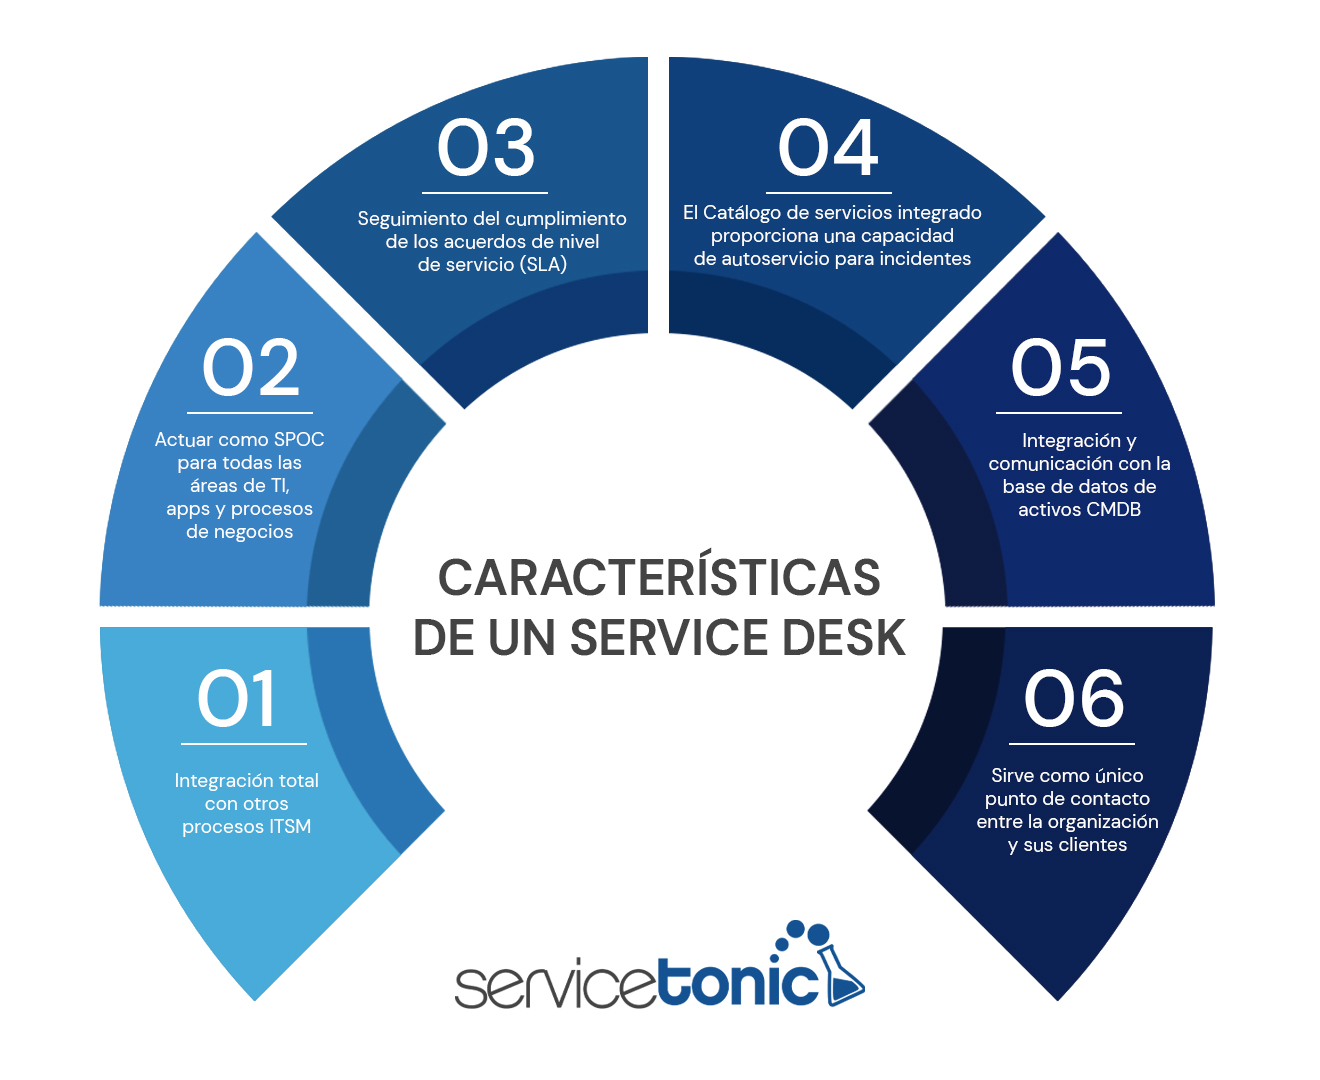 Service Desk caracteristicas